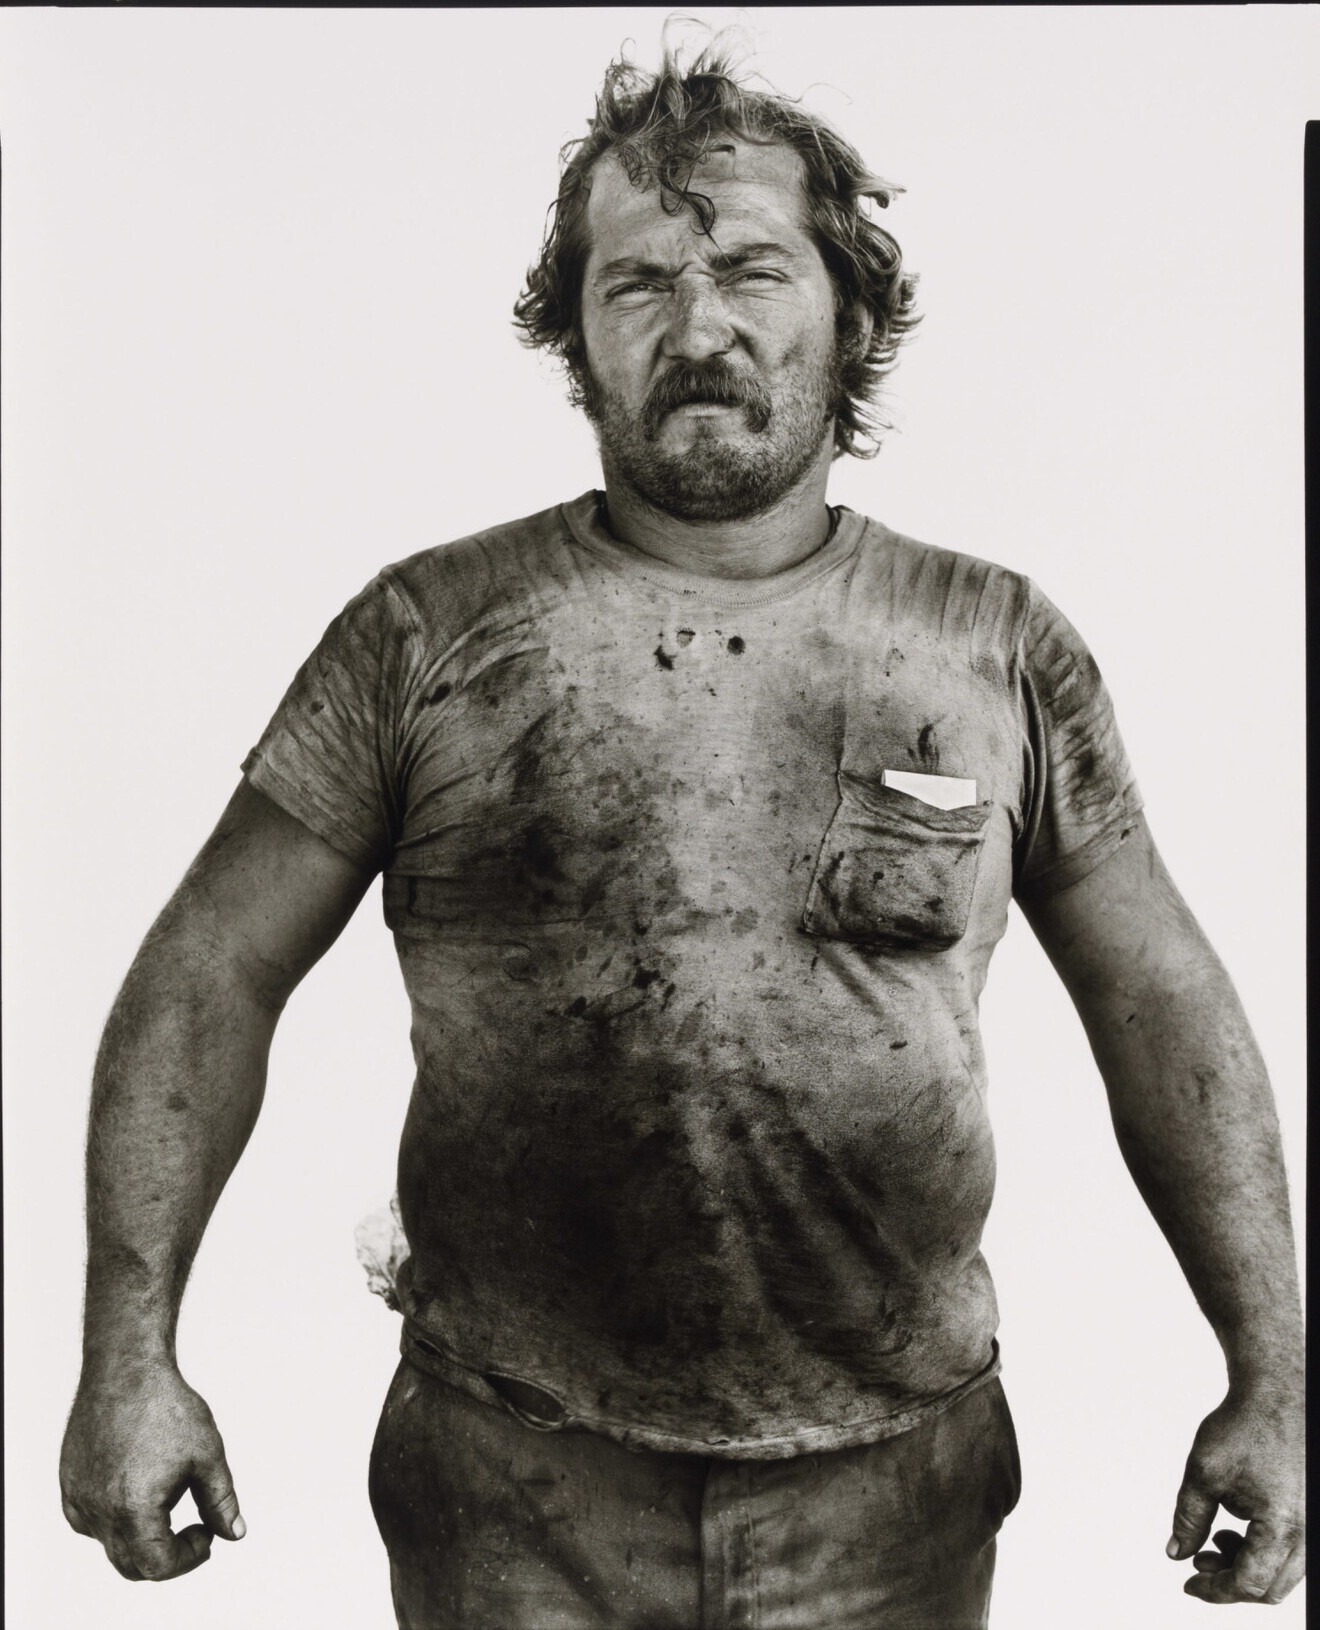 Джерри Дон Китер, рабочий нефтяного месторождения, Эль-Рино, Оклахома, 1980 г. Фотограф Ричард Аведон